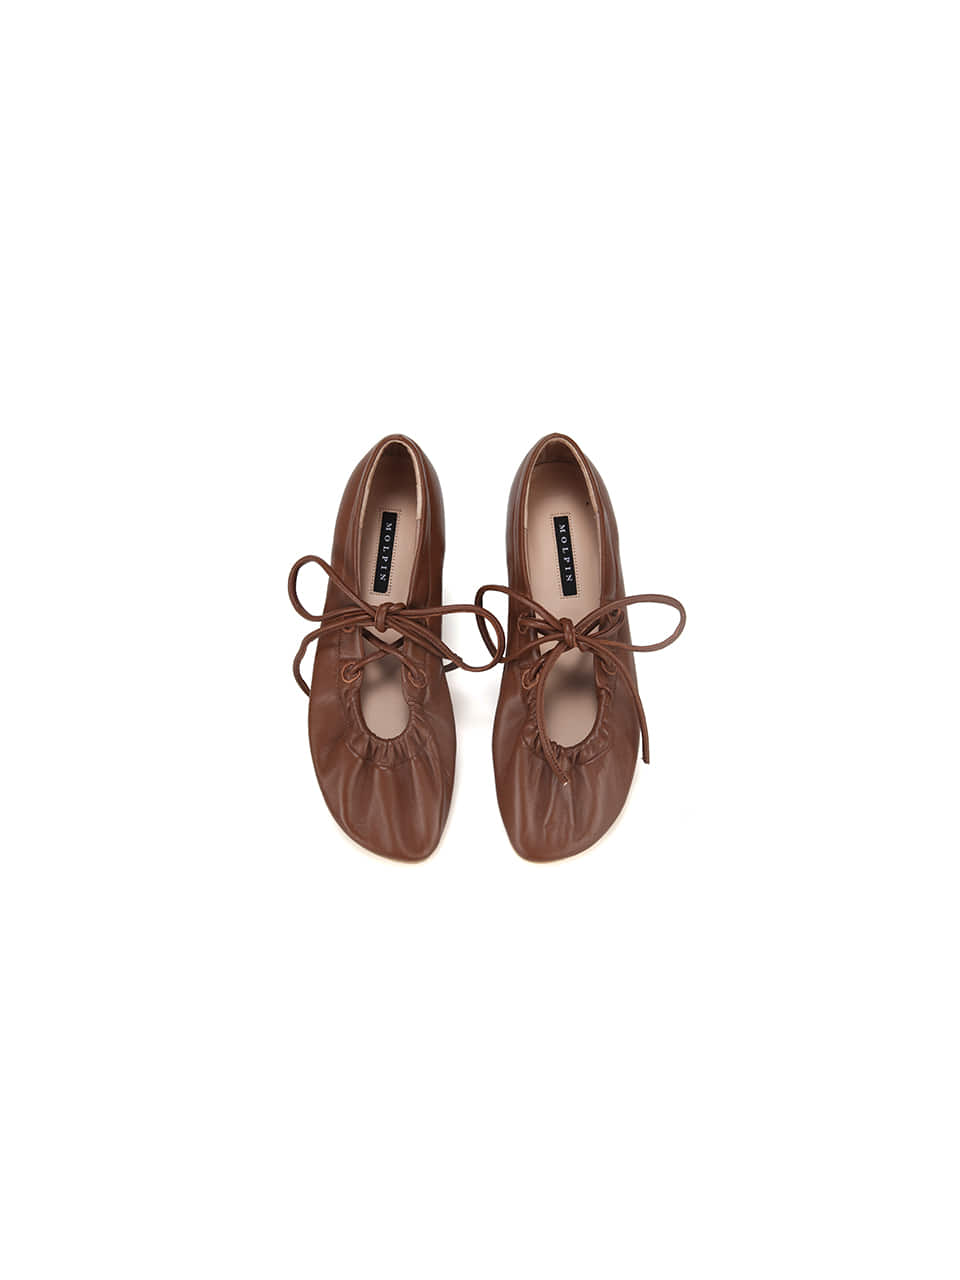 [스크래치샘플2차]Ballerina Flat Shoes_turn_20199_brown